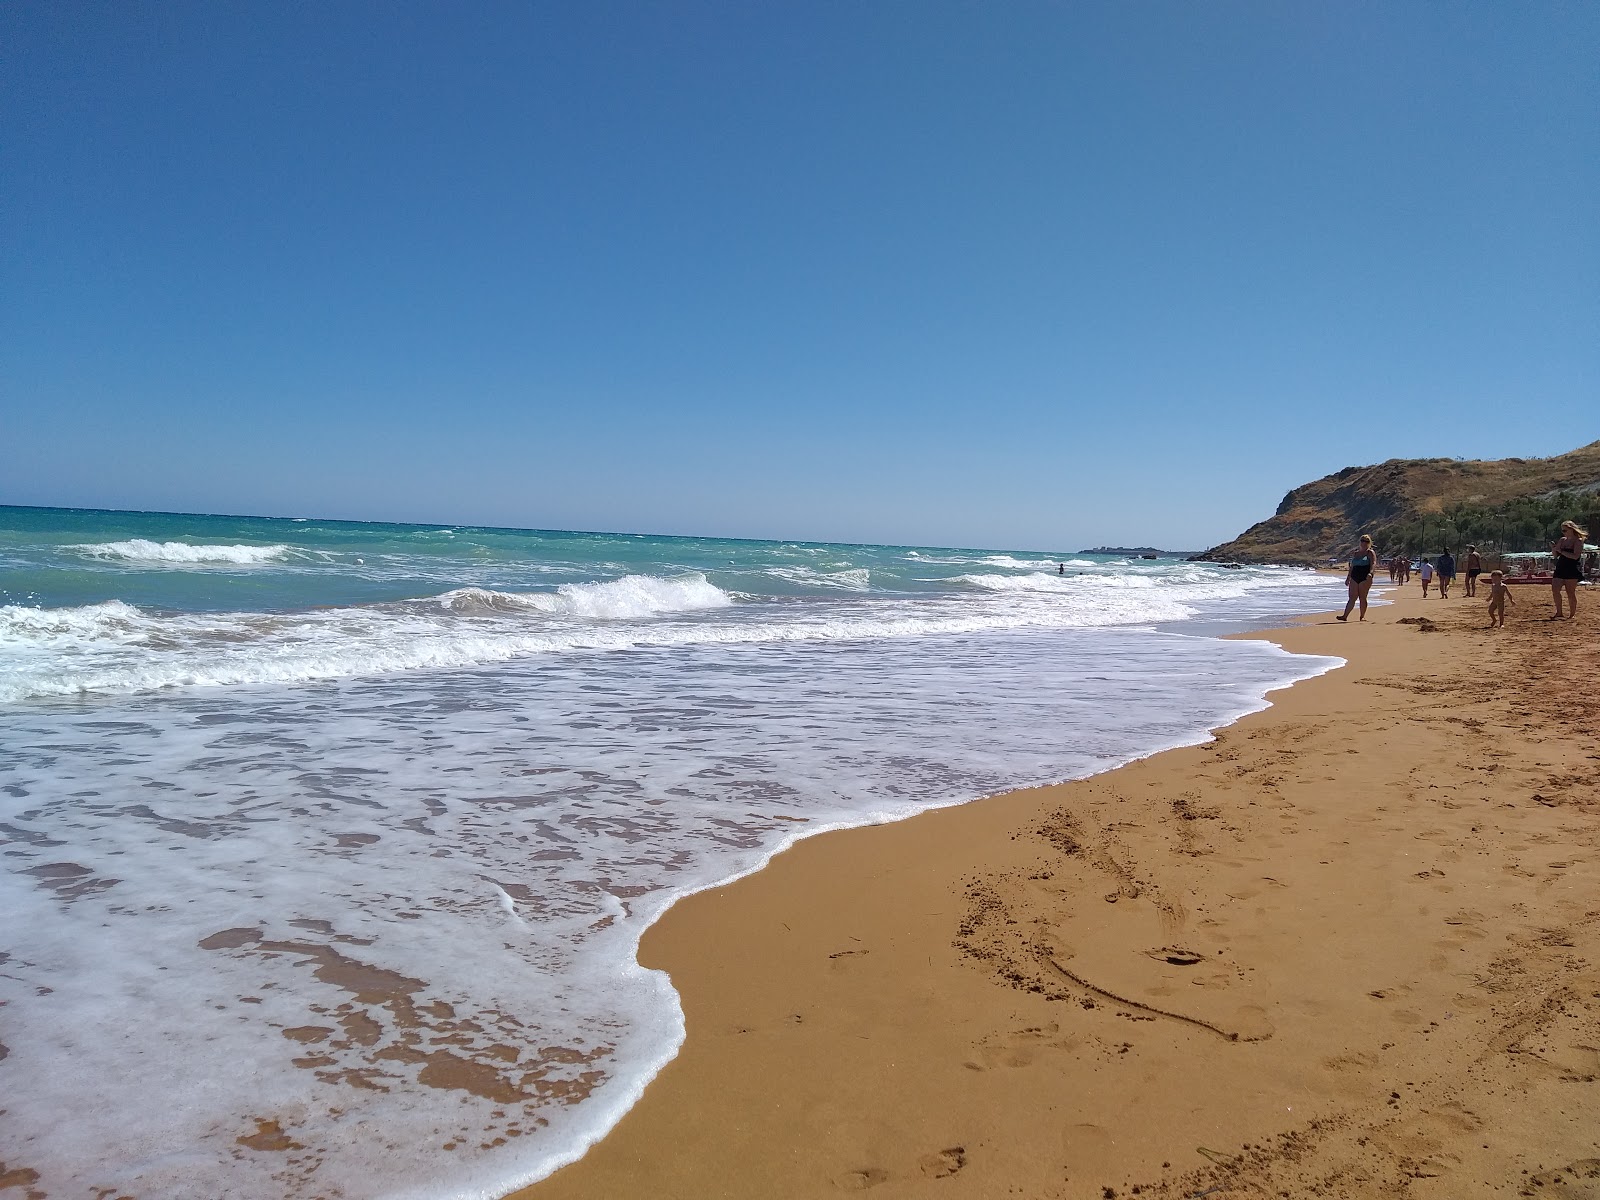 Villaggio Casarossa'in fotoğrafı geniş plaj ile birlikte